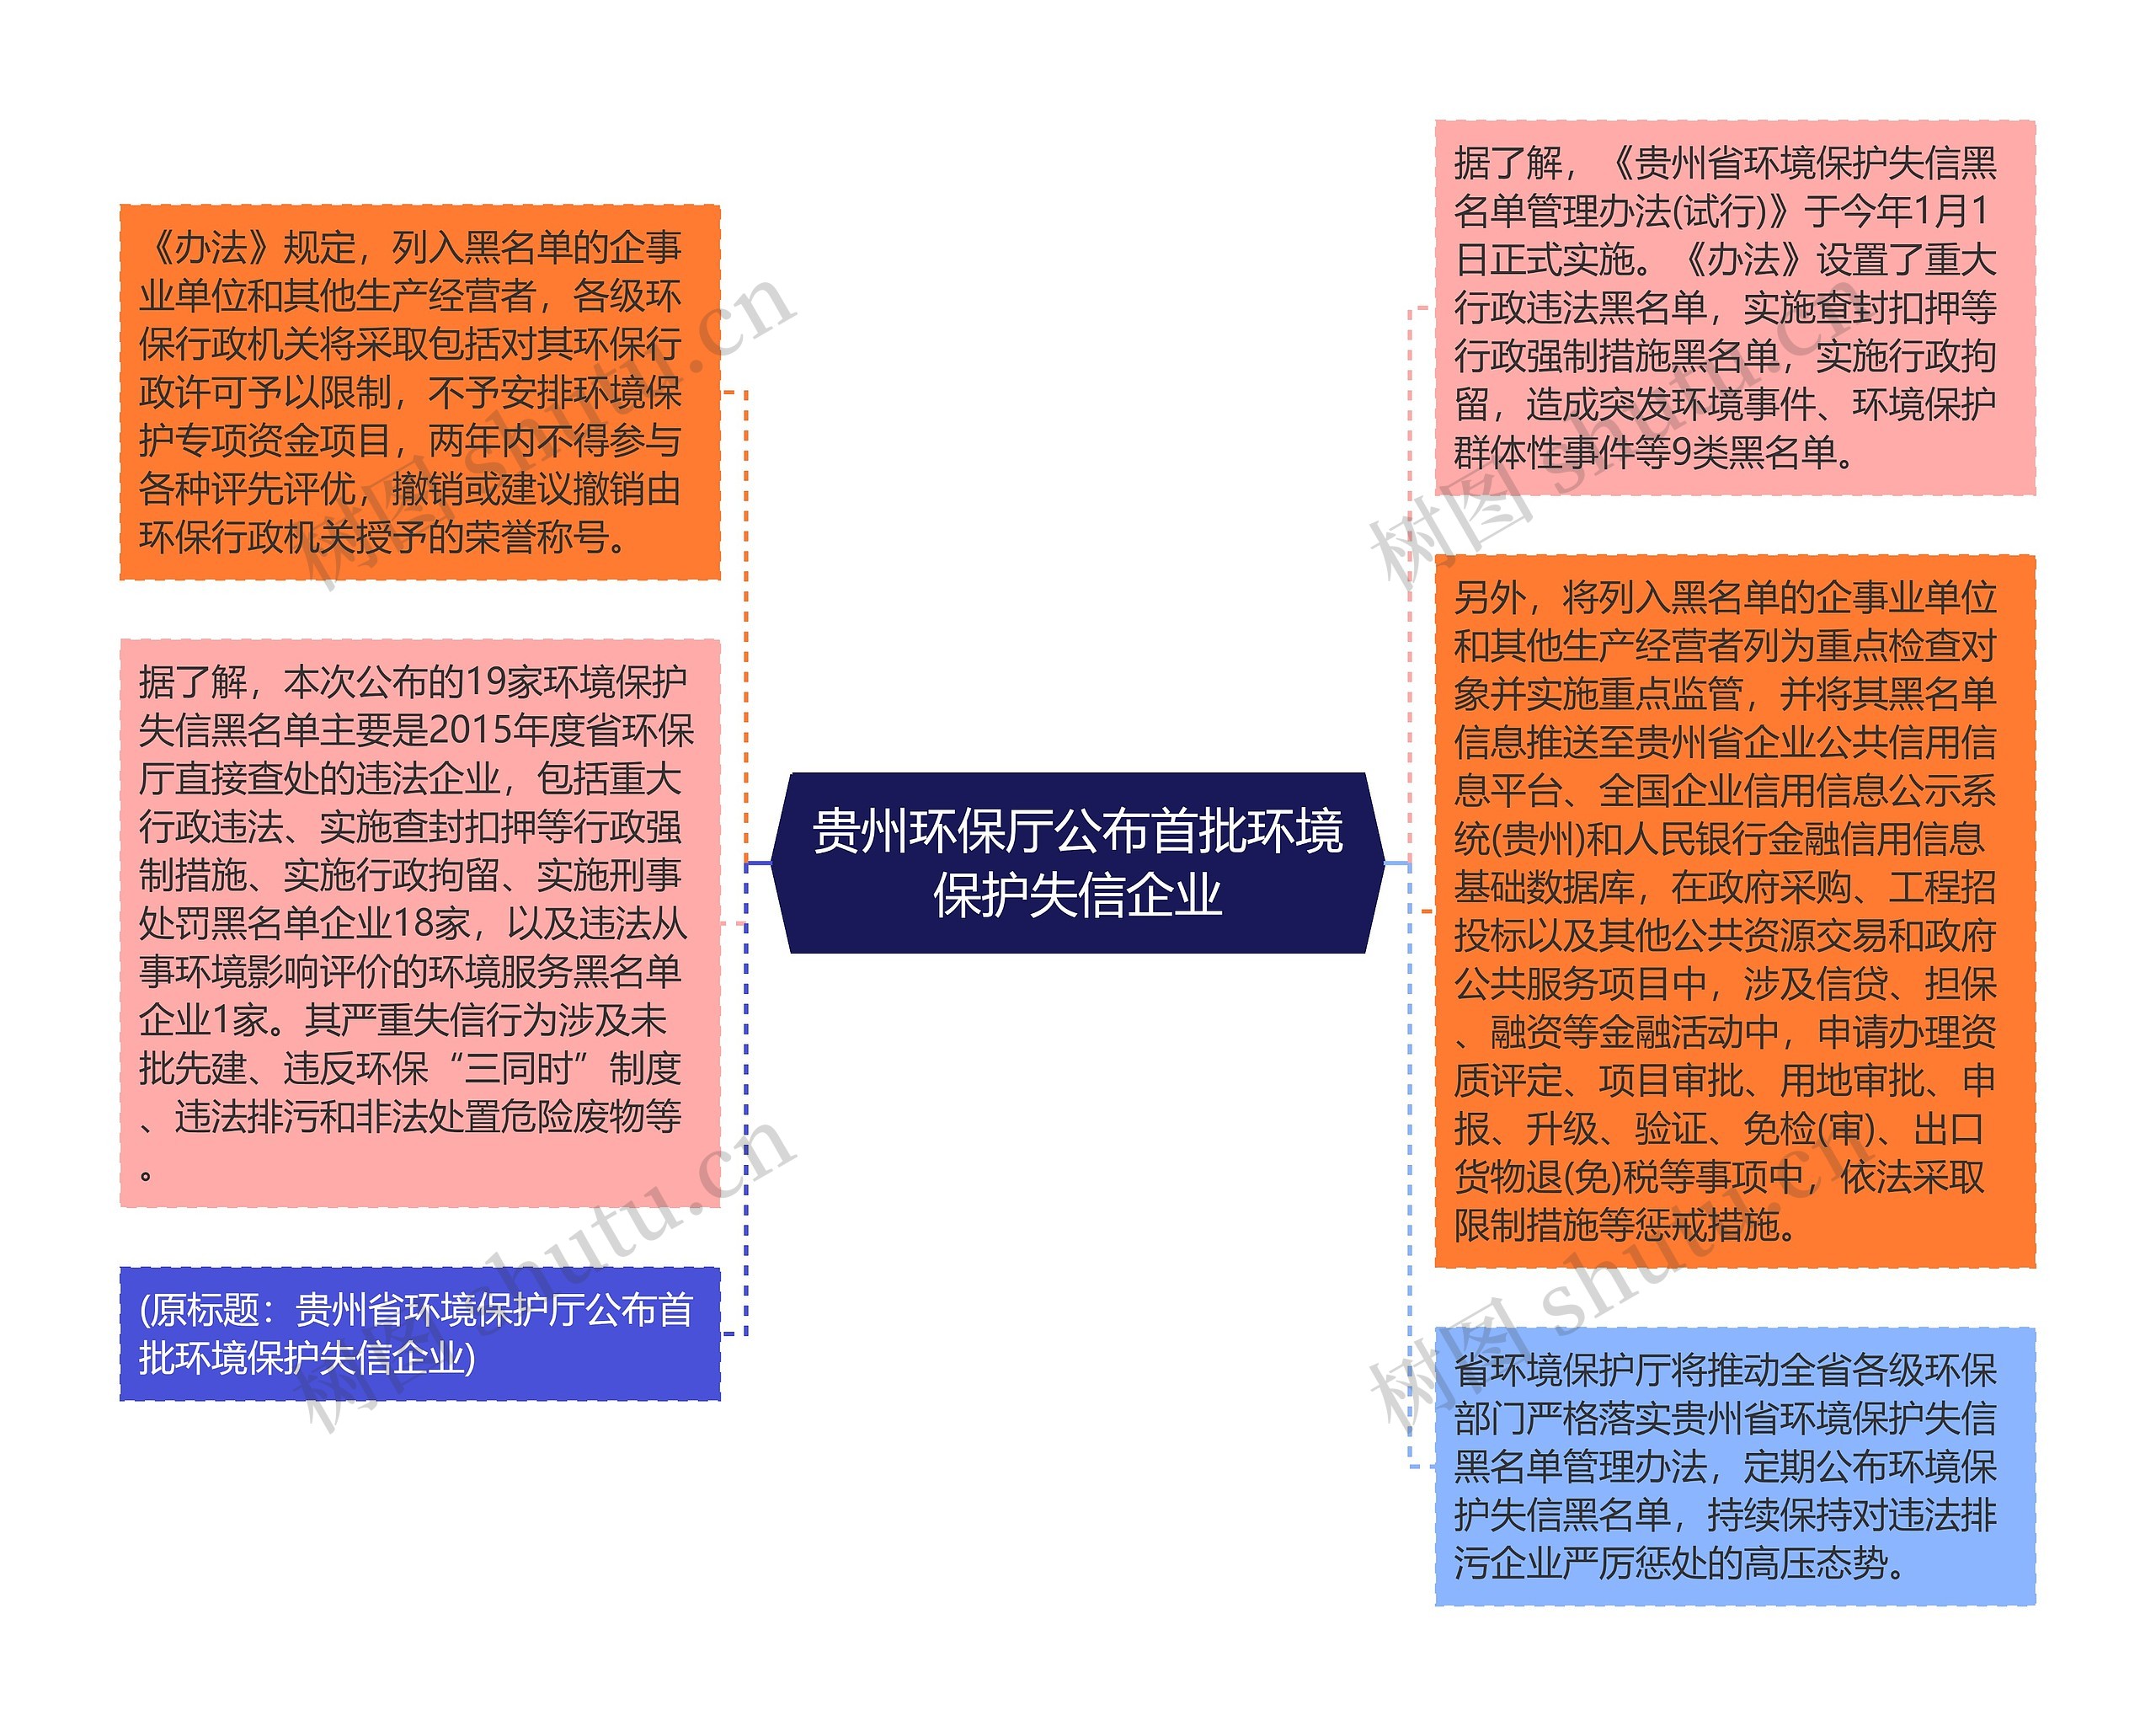 贵州环保厅公布首批环境保护失信企业